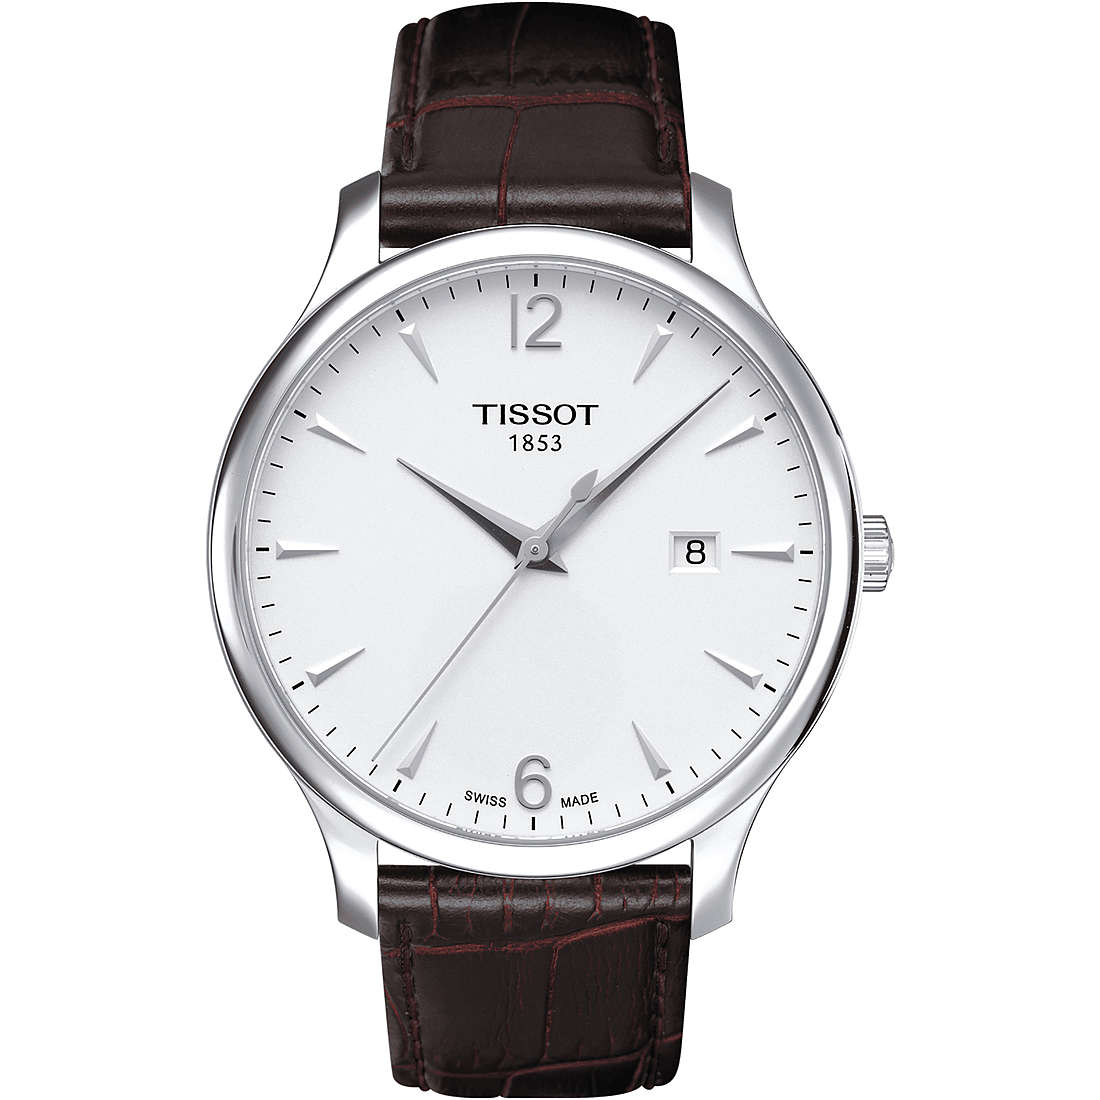 orologio solo tempo uomo Tissot T-Classic Tradition T0636101603700